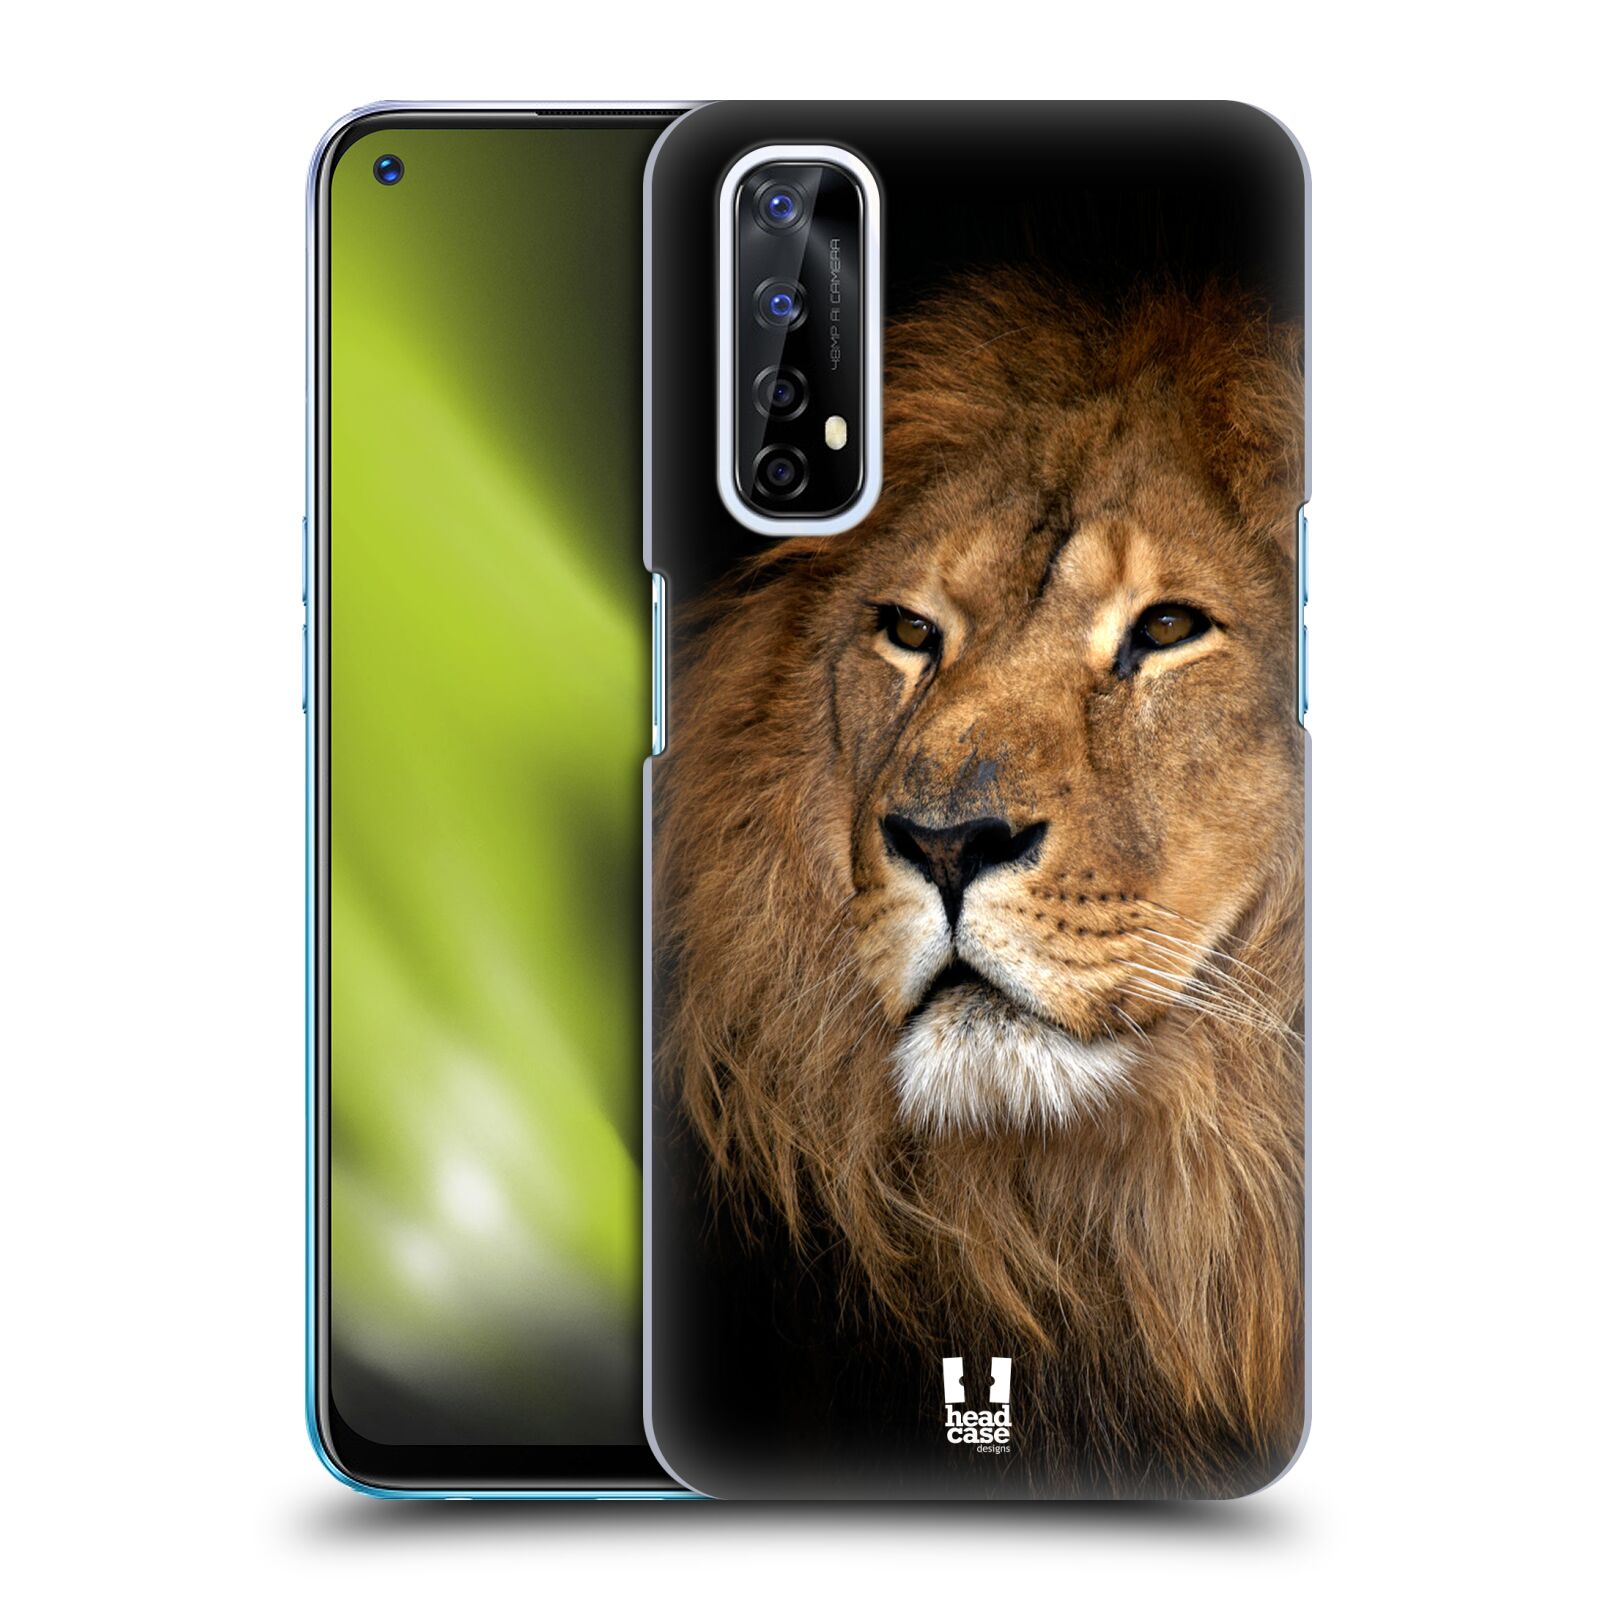 Zadní obal pro mobil Realme 7 - HEAD CASE - Svět zvířat král zvířat Lev